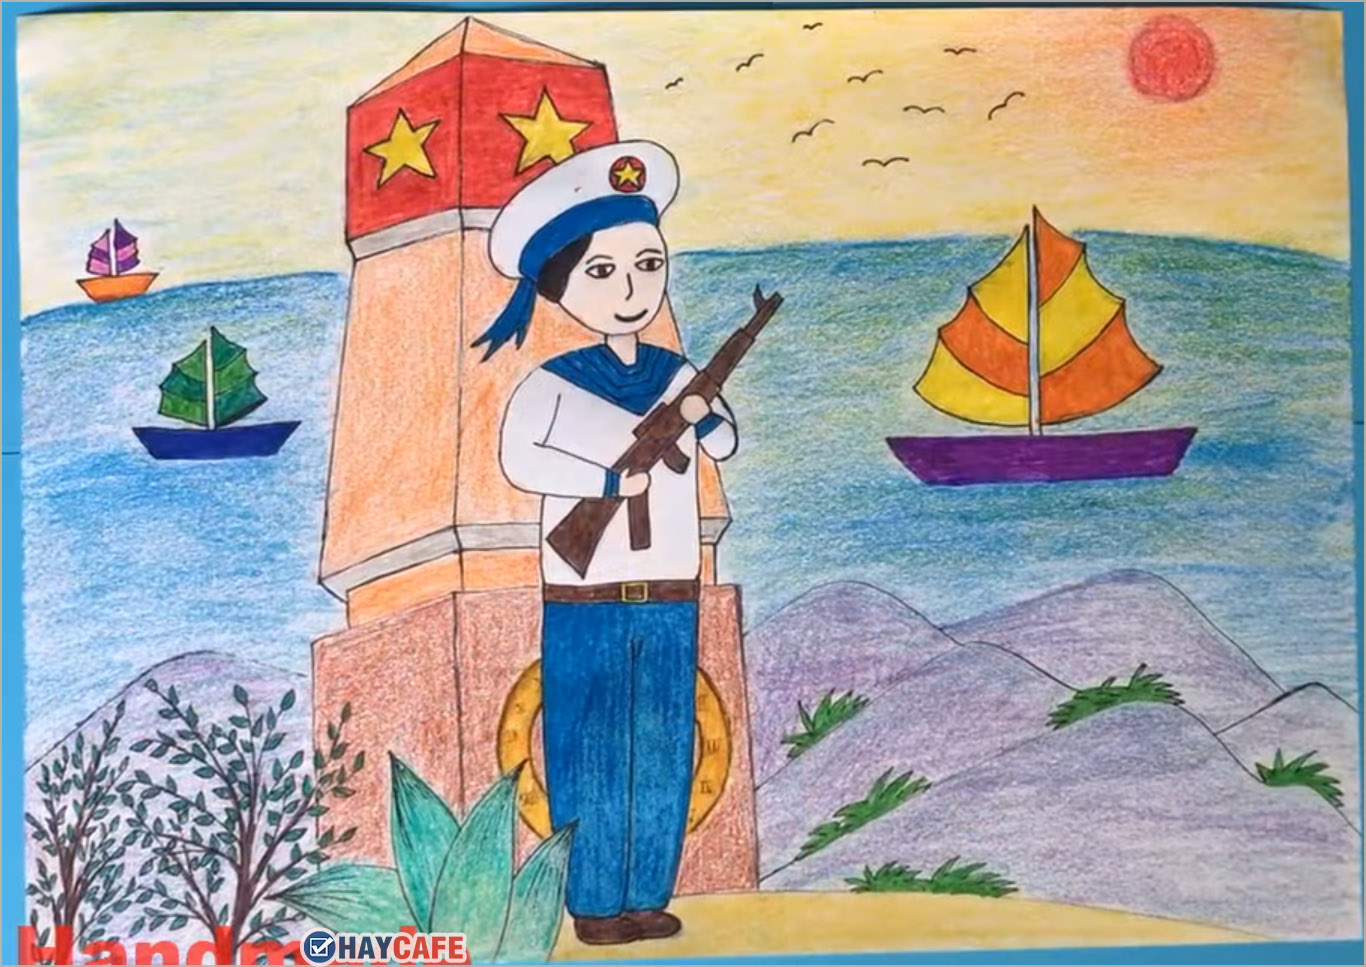 Tranh chú bộ đội  Gợi ý vẽ tranh đơn giản mà nhiều ý nghĩa Aloha Decor   Thế Giới Đồ Decor Số 1 Việt Nam